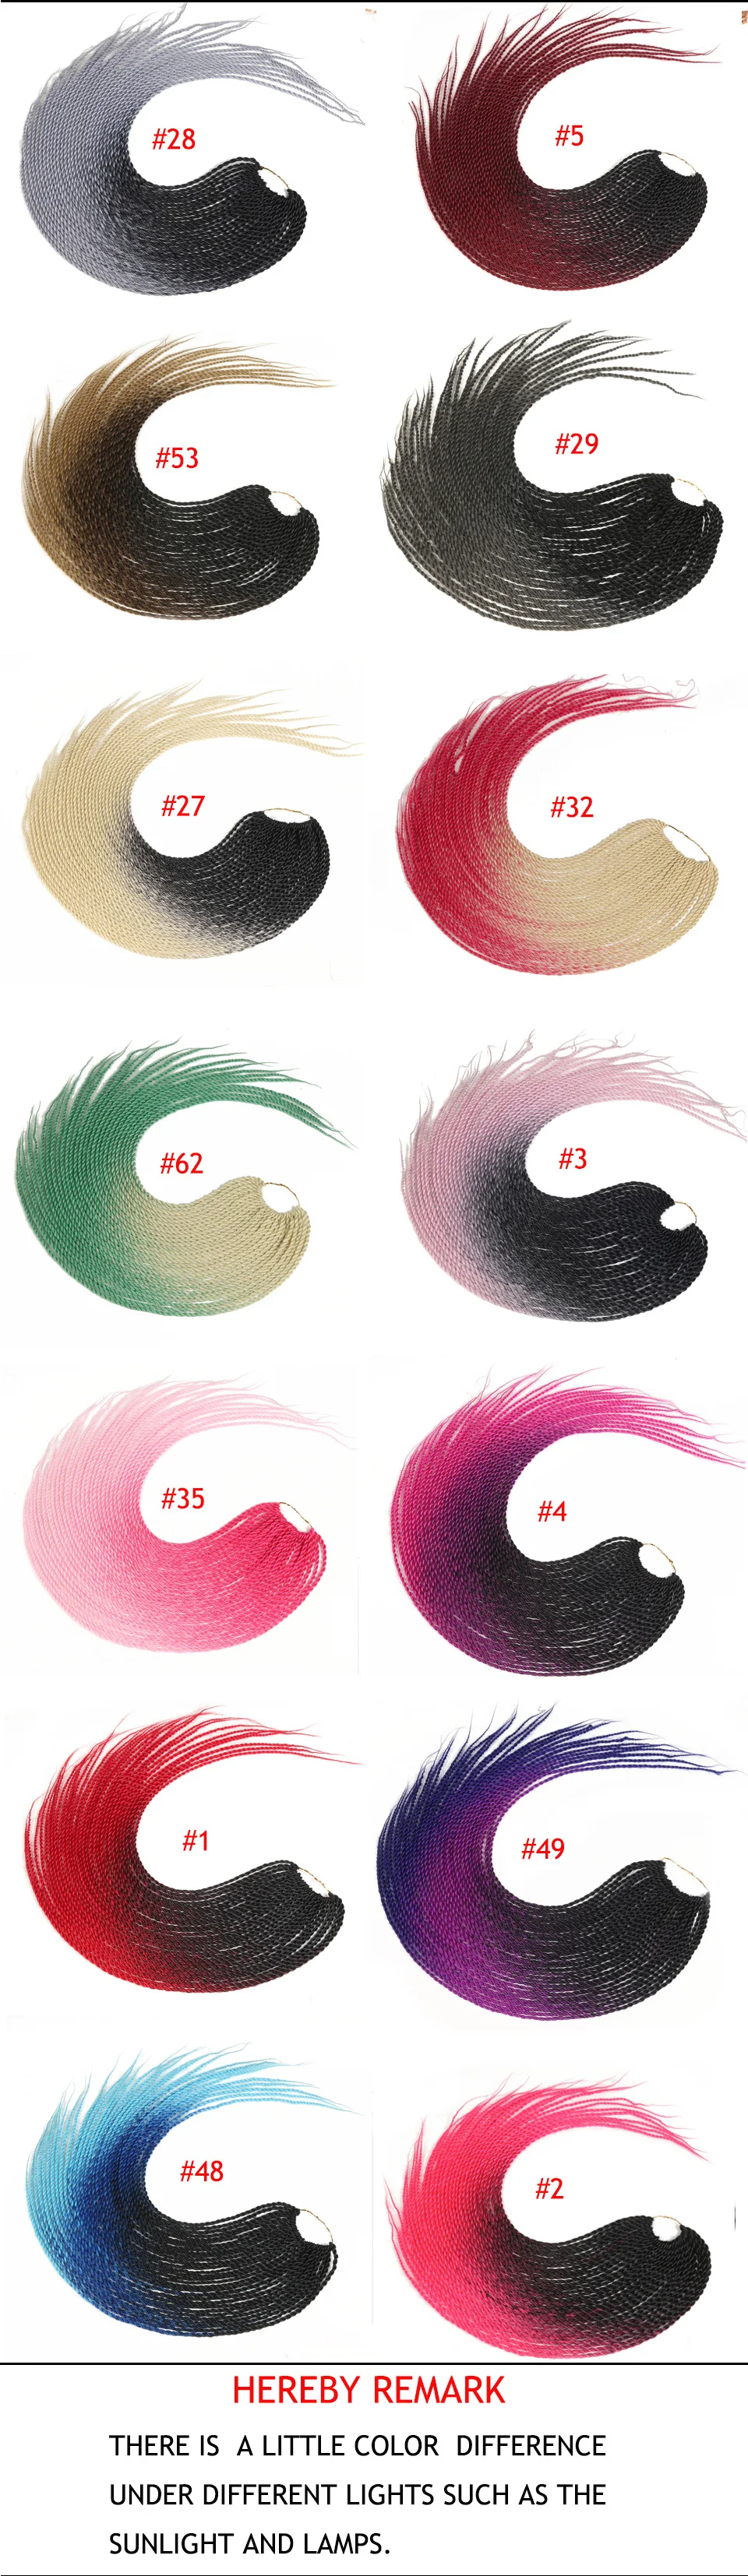 SAMBRAID 24 дюймов Омбре Сенегальские накрученные волосы для наращивания крючком коса 30 корней/упаковка синтетические волосы для женщин розовый, серый